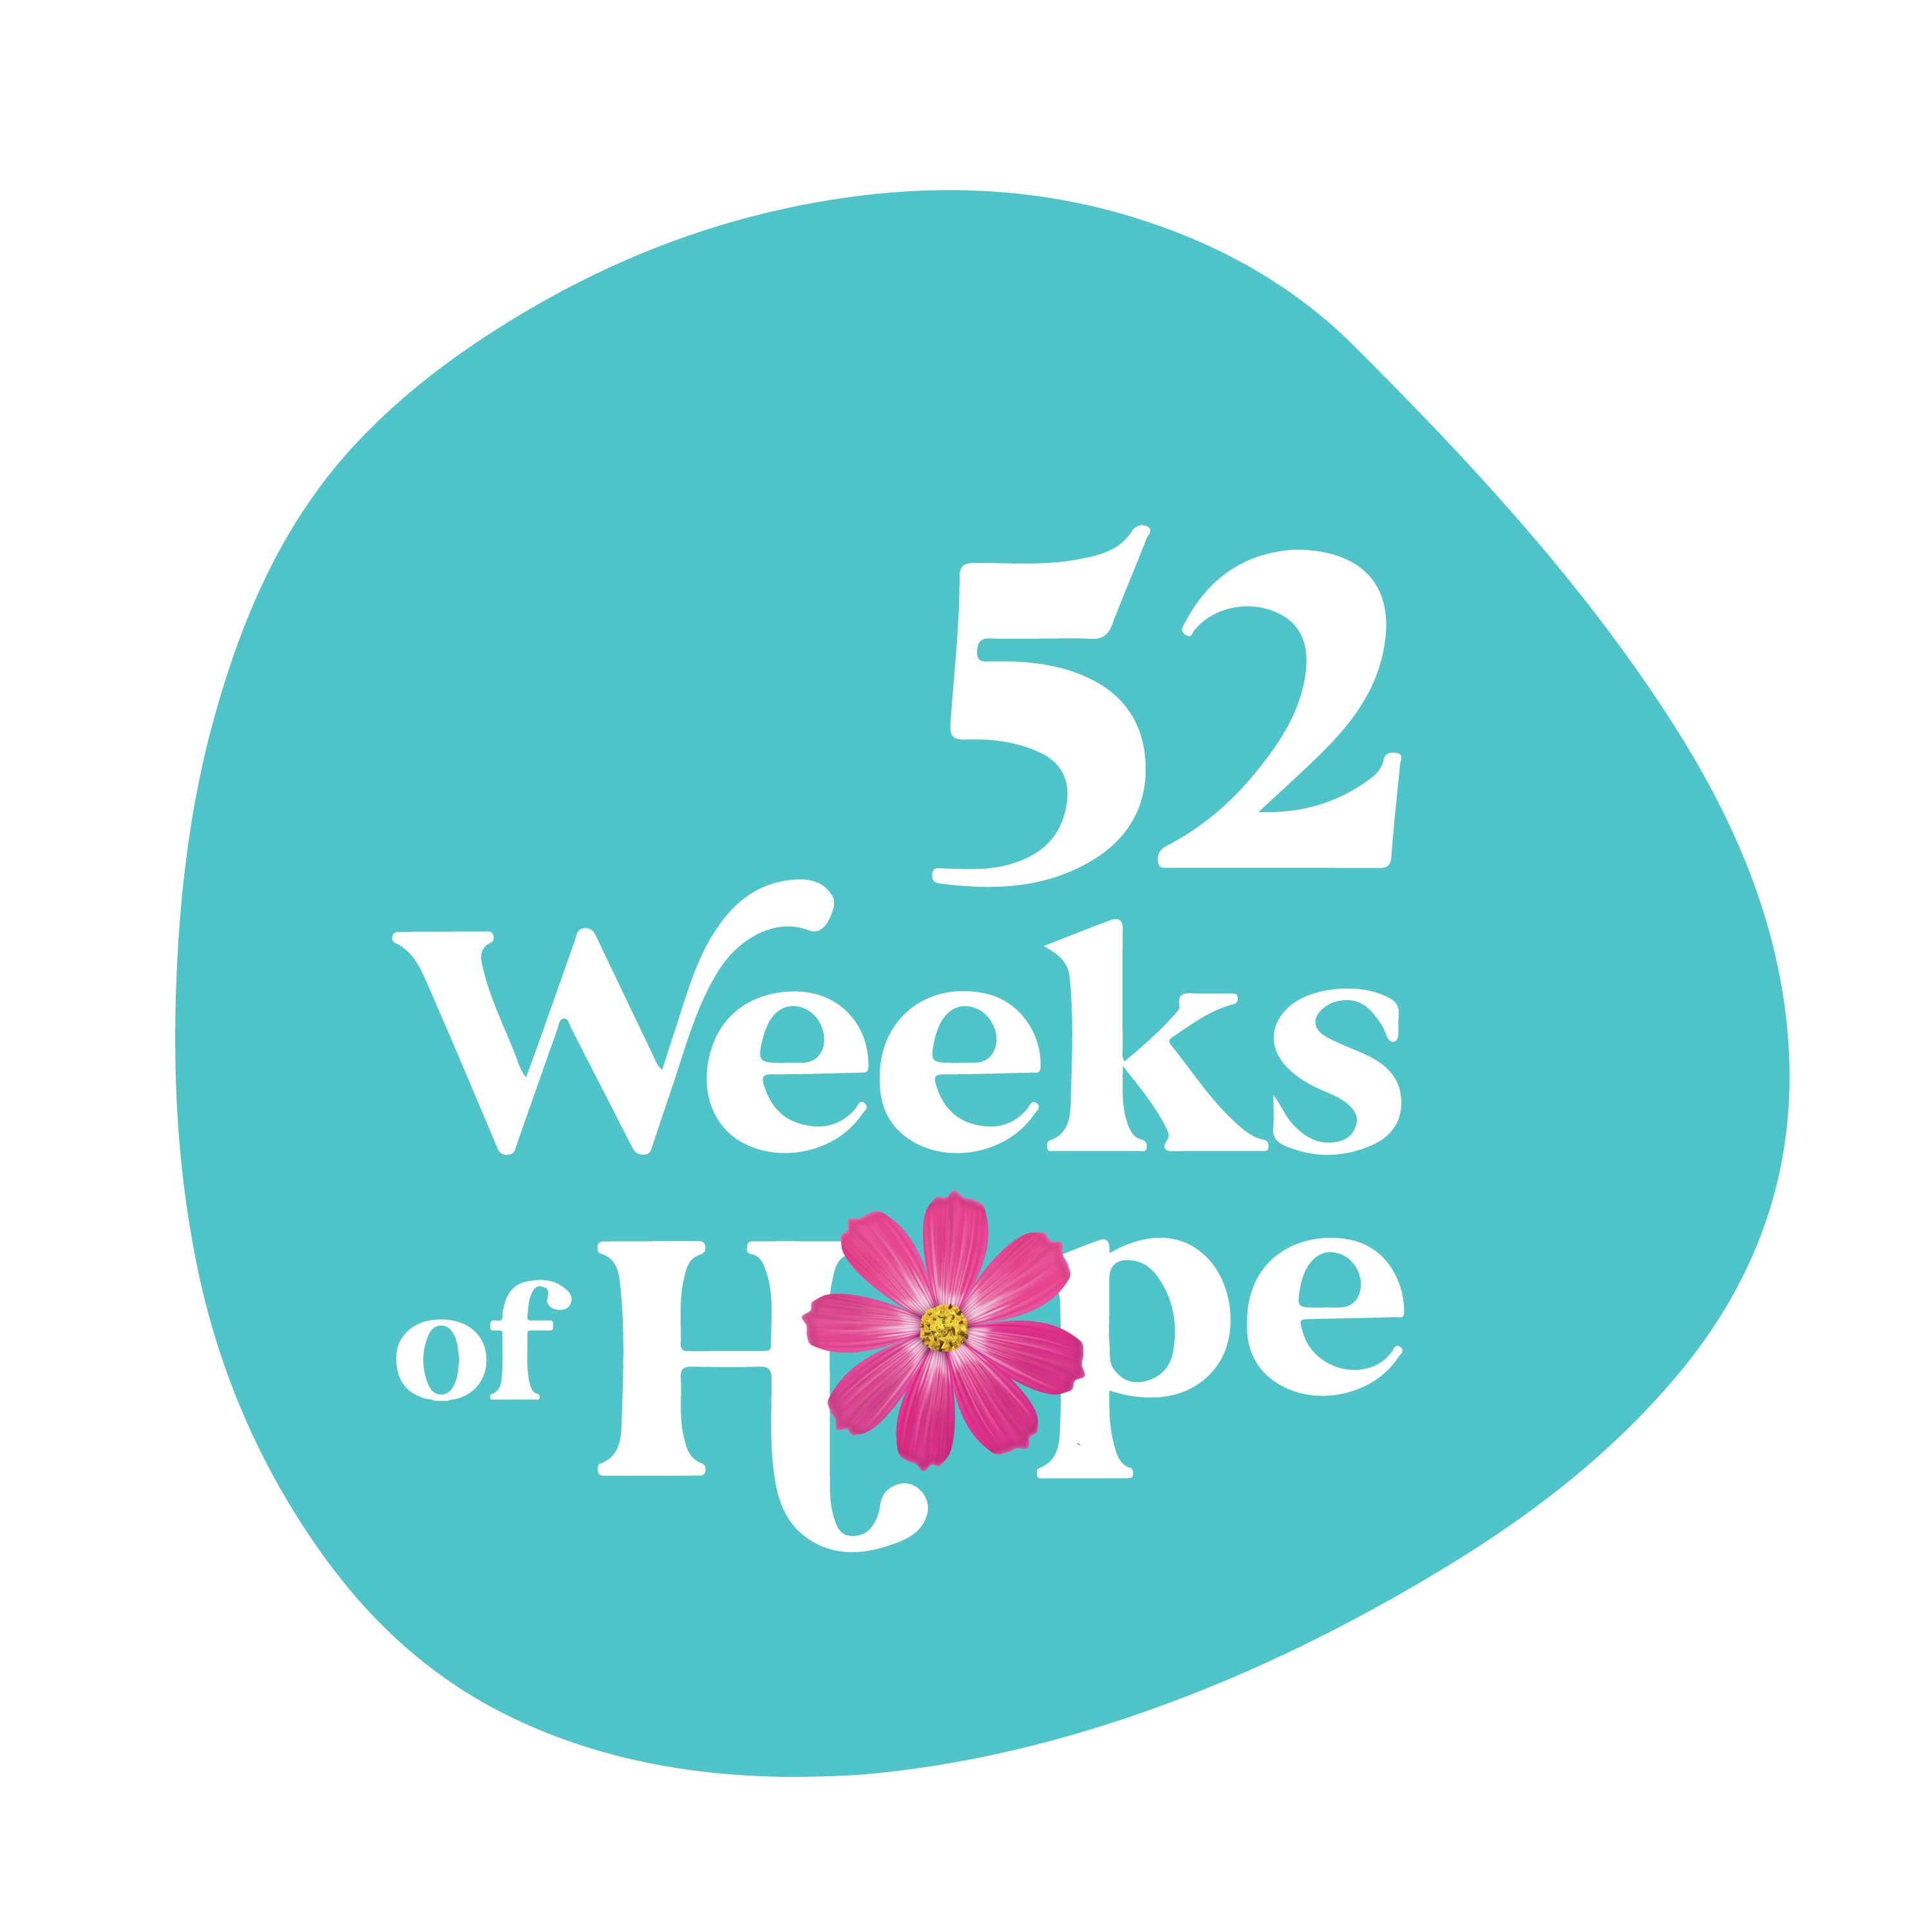 Manifesting Balance : 52 Weeks of Hope podcast show image